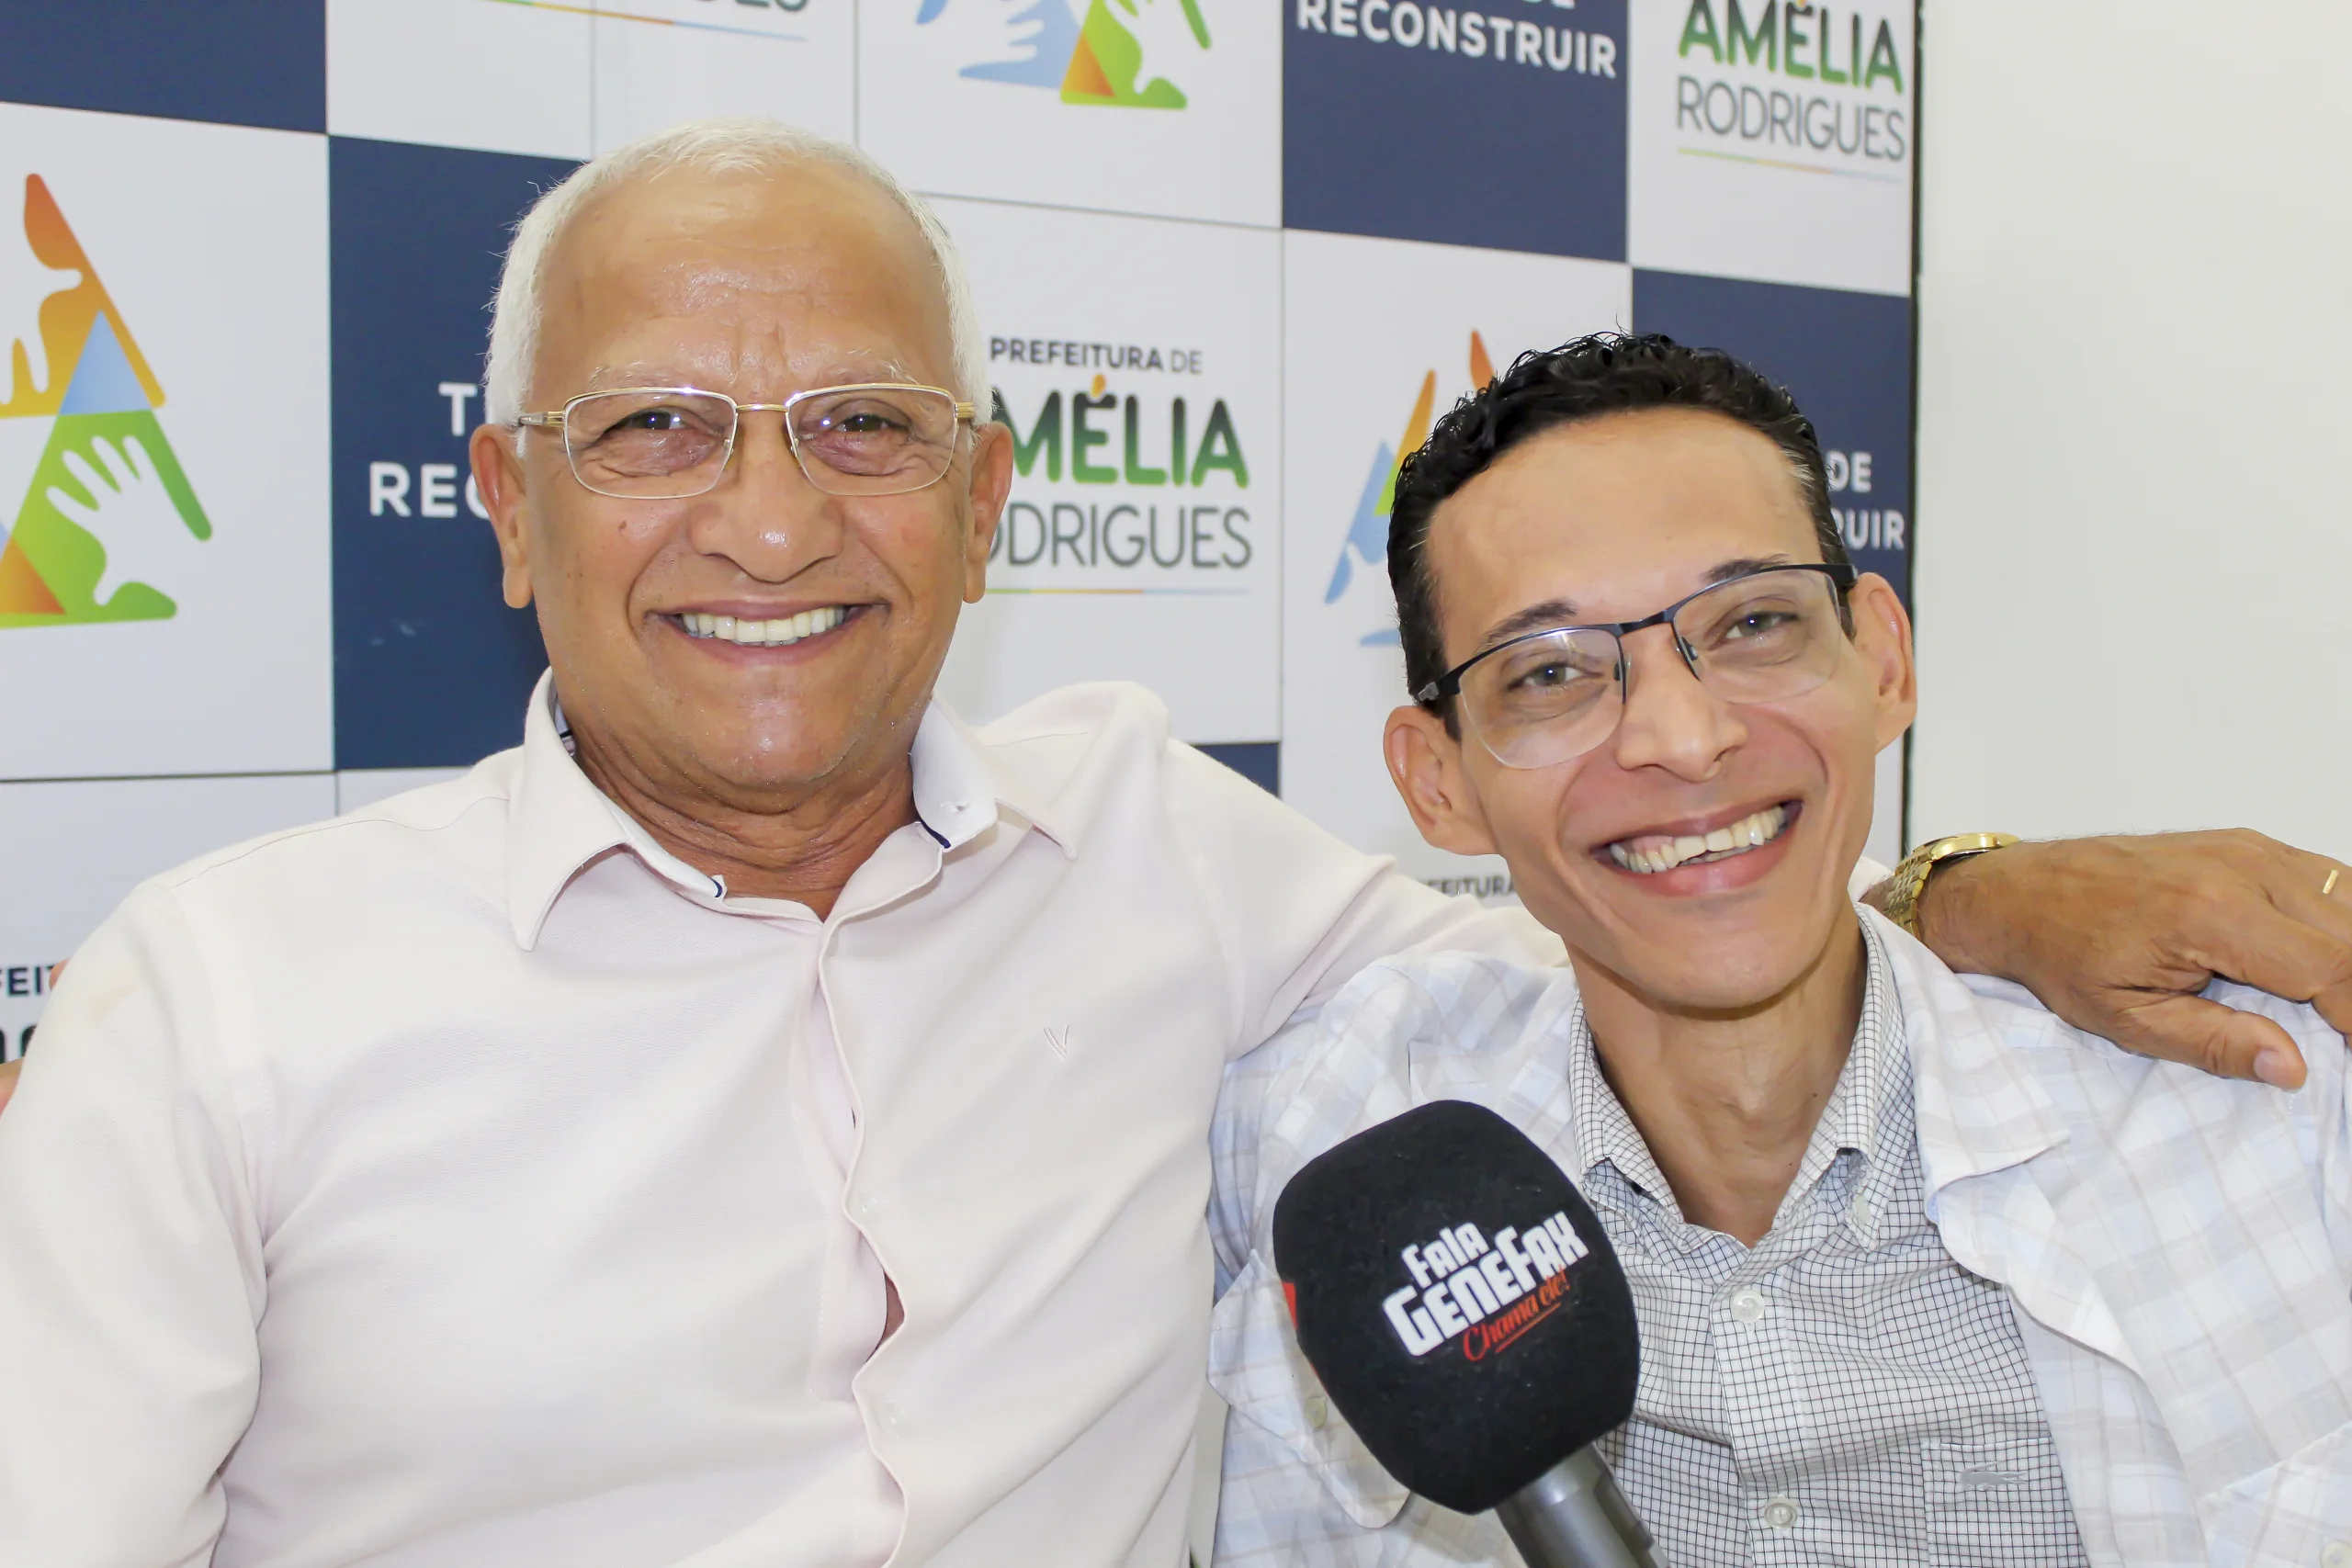 Prefeito João Bahia concede entrevista ao jornalista Genefax. Foto: Fala Genefax 